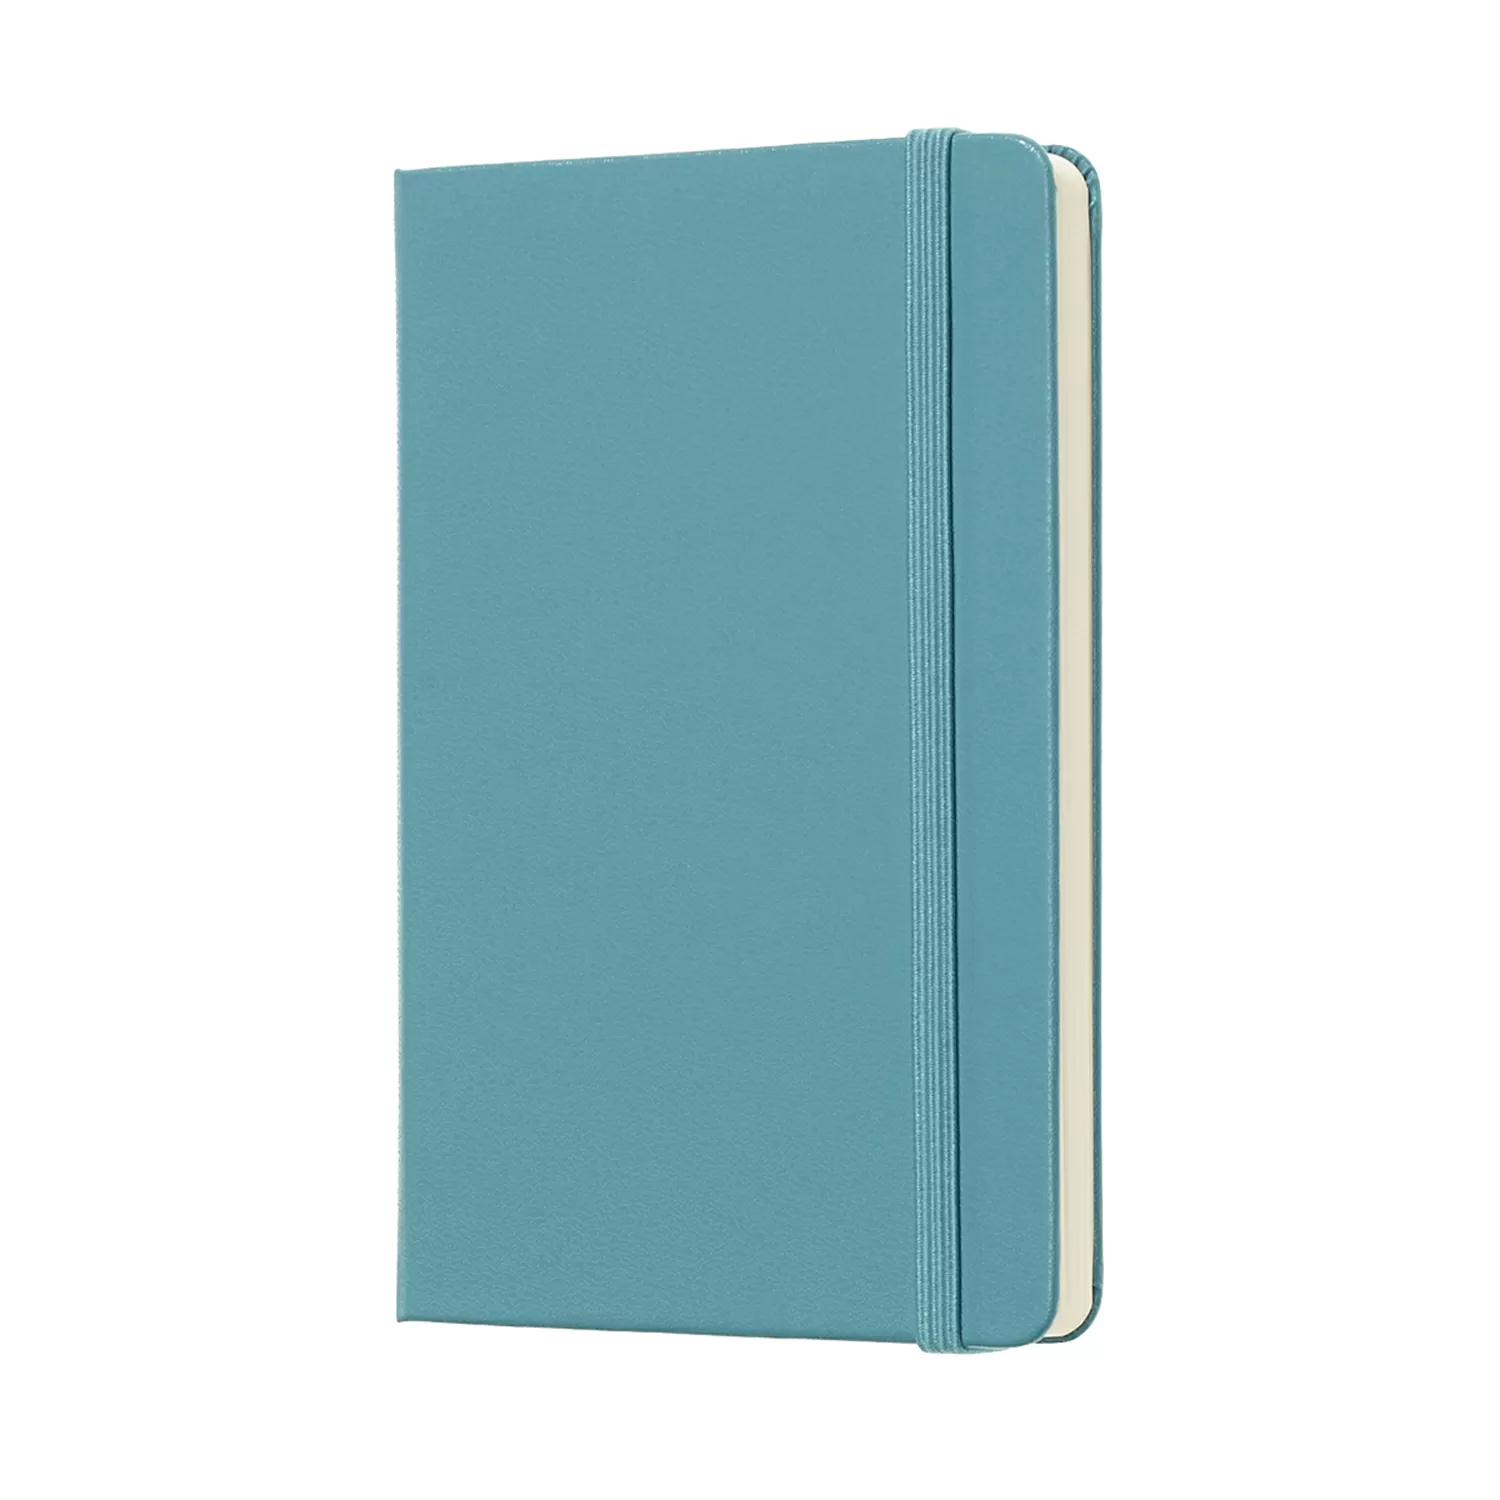 Записная книжка Classic (нелинован) Pocket голубой